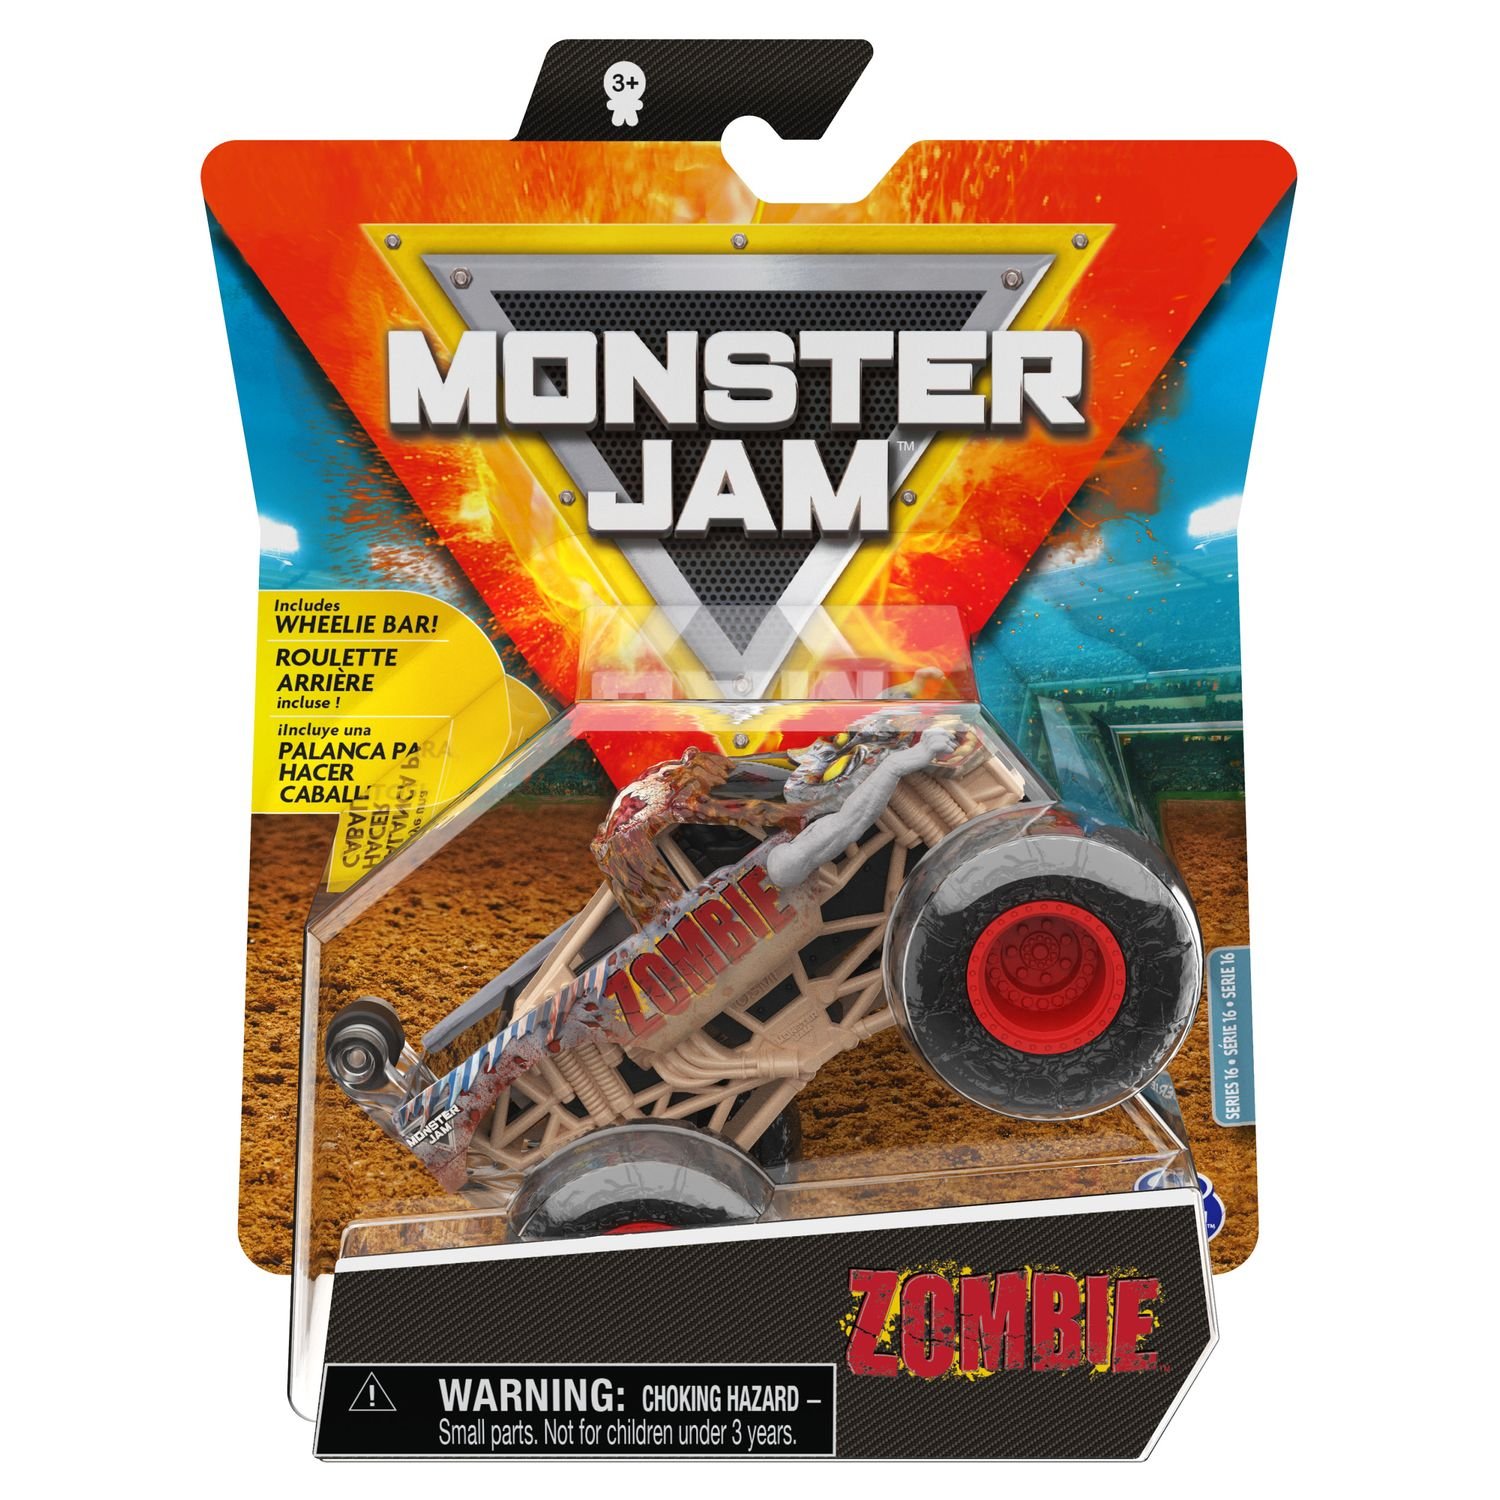 Машинка Monster Jam 1:64 Zombie 6060870